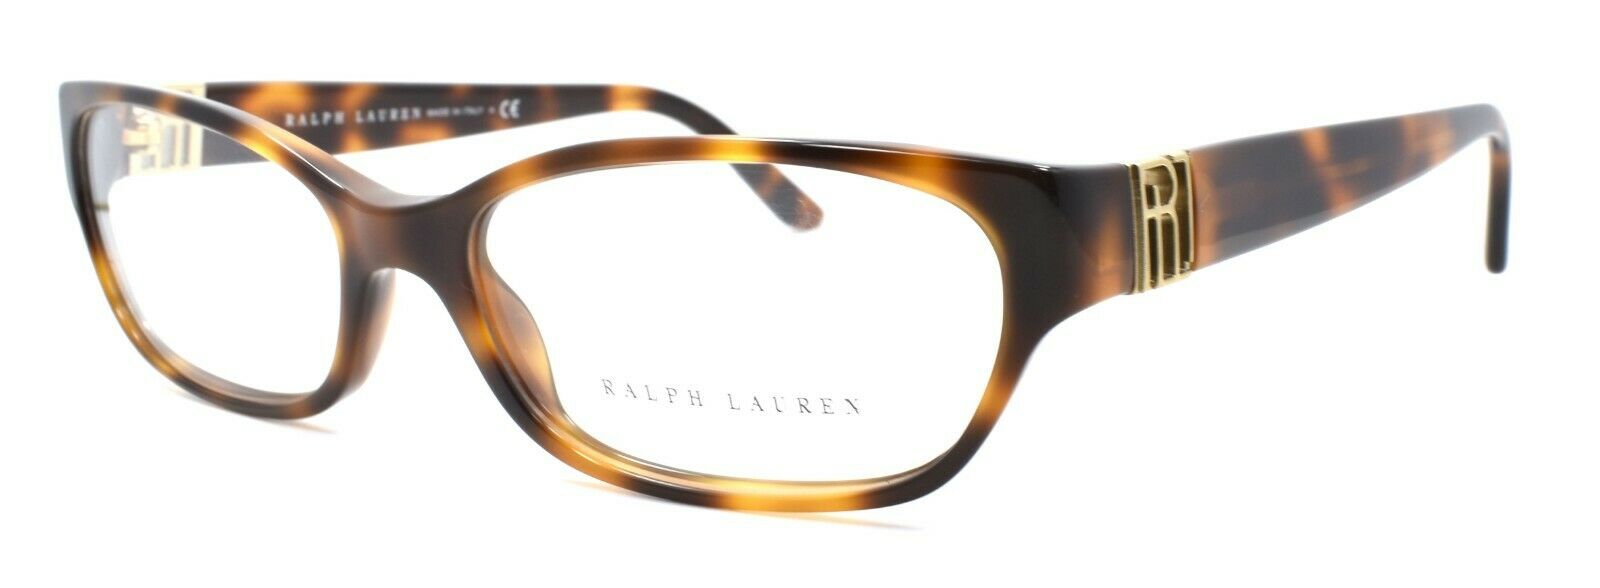 1-Ralph Lauren RL6081 5303 Women's Eyeglasses Frames 54-16-140 Havana Brown-713132375297-IKSpecs